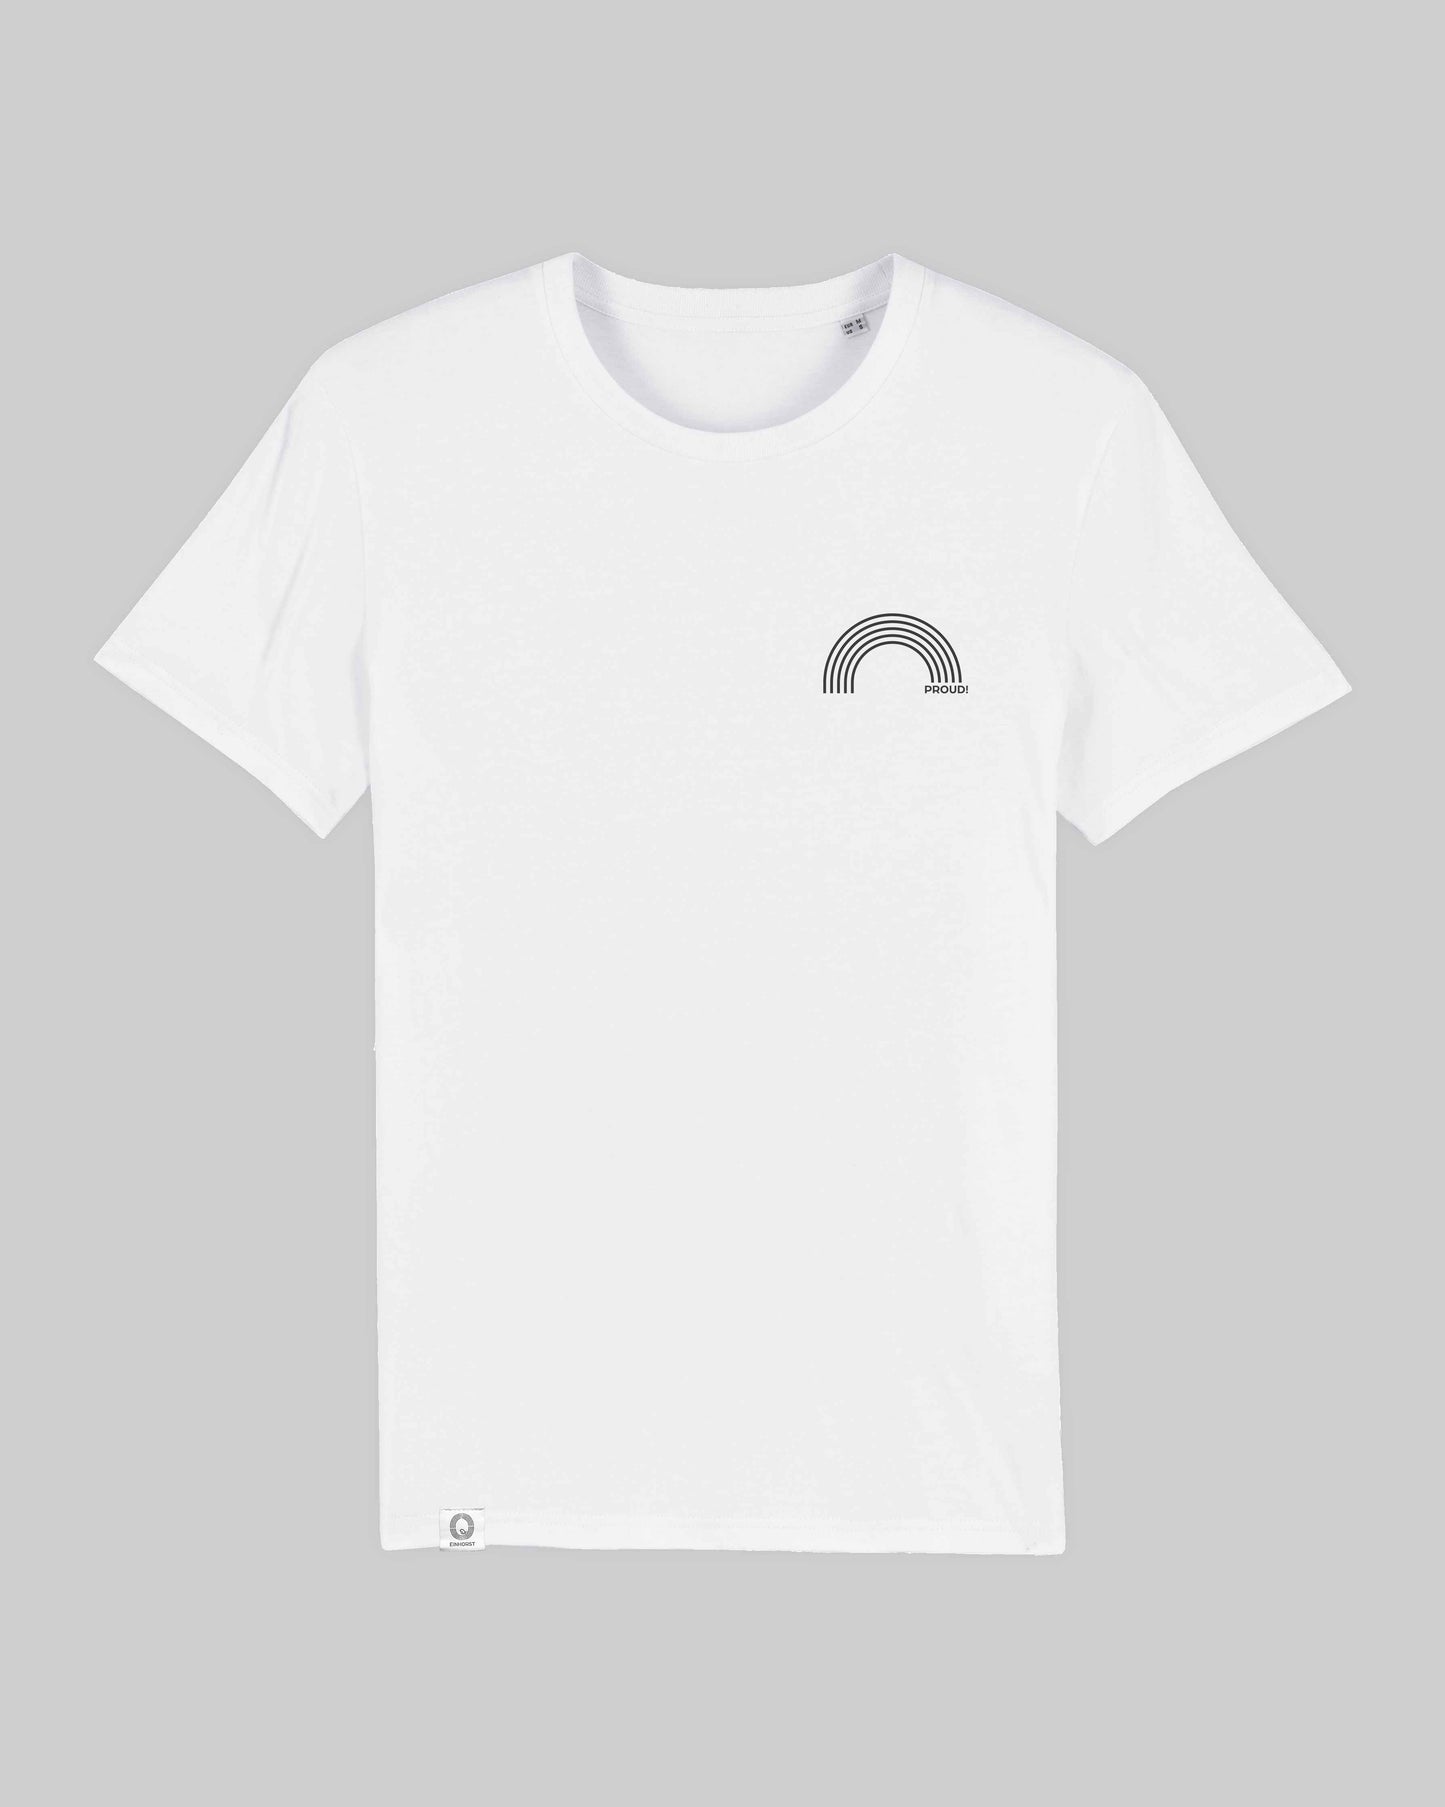 EINHORST® unisex Organic Shirt in Weiß mit dem Motiv "proud Regenbogen" in der Kombination schwarzer Regenbogen mit schwarzer Schrift, Bild von Shirt von vorne